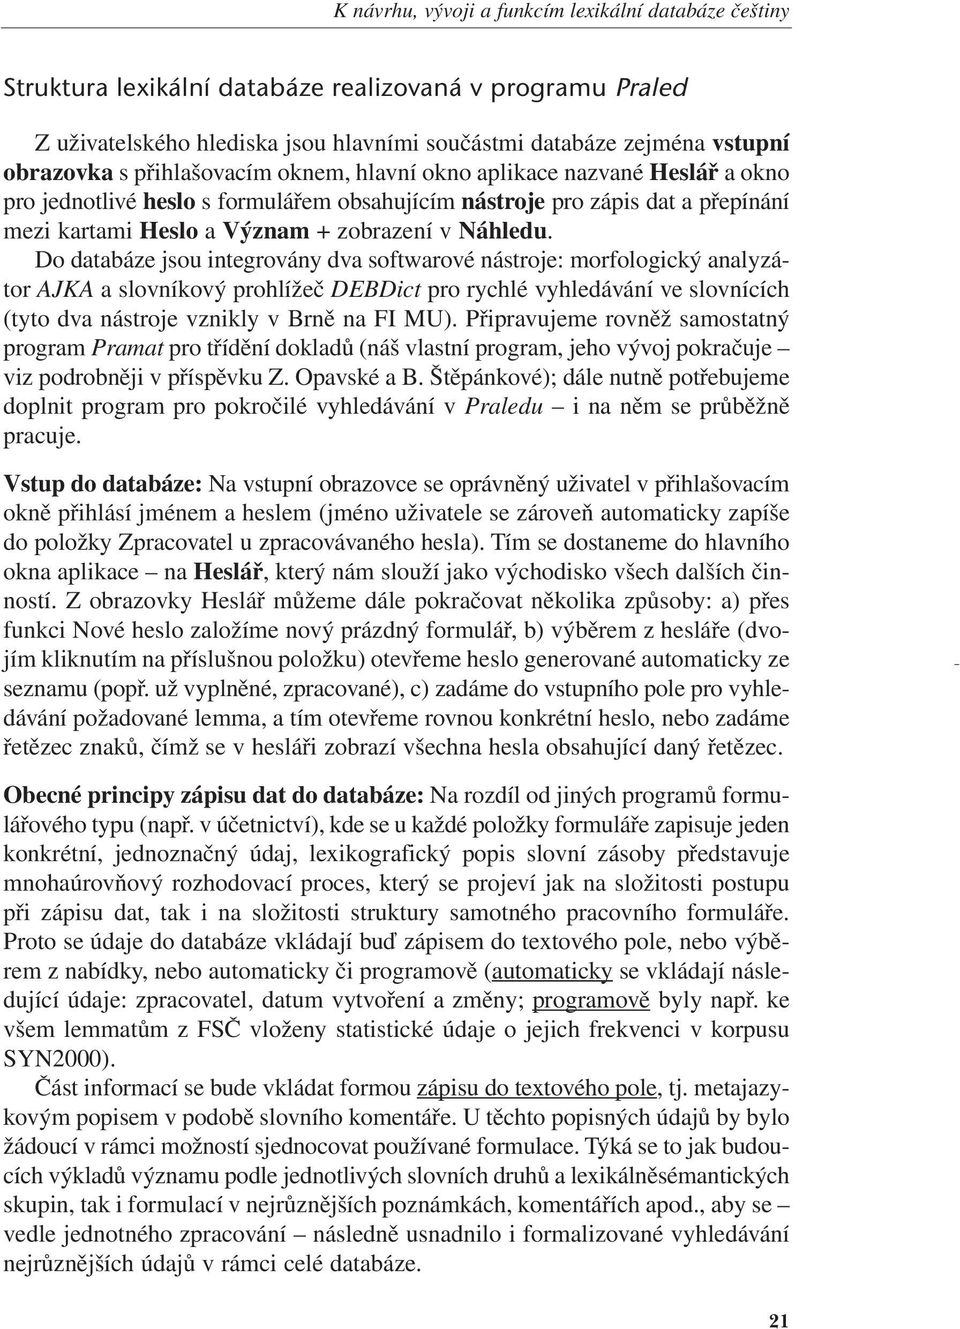 2009 22:03 Stránka 21 K návrhu, vývoji a funkcím lexikální databáze češtiny Struktura lexikální databáze realizovaná v programu Praled Z uživatelského hlediska jsou hlavními součástmi databáze